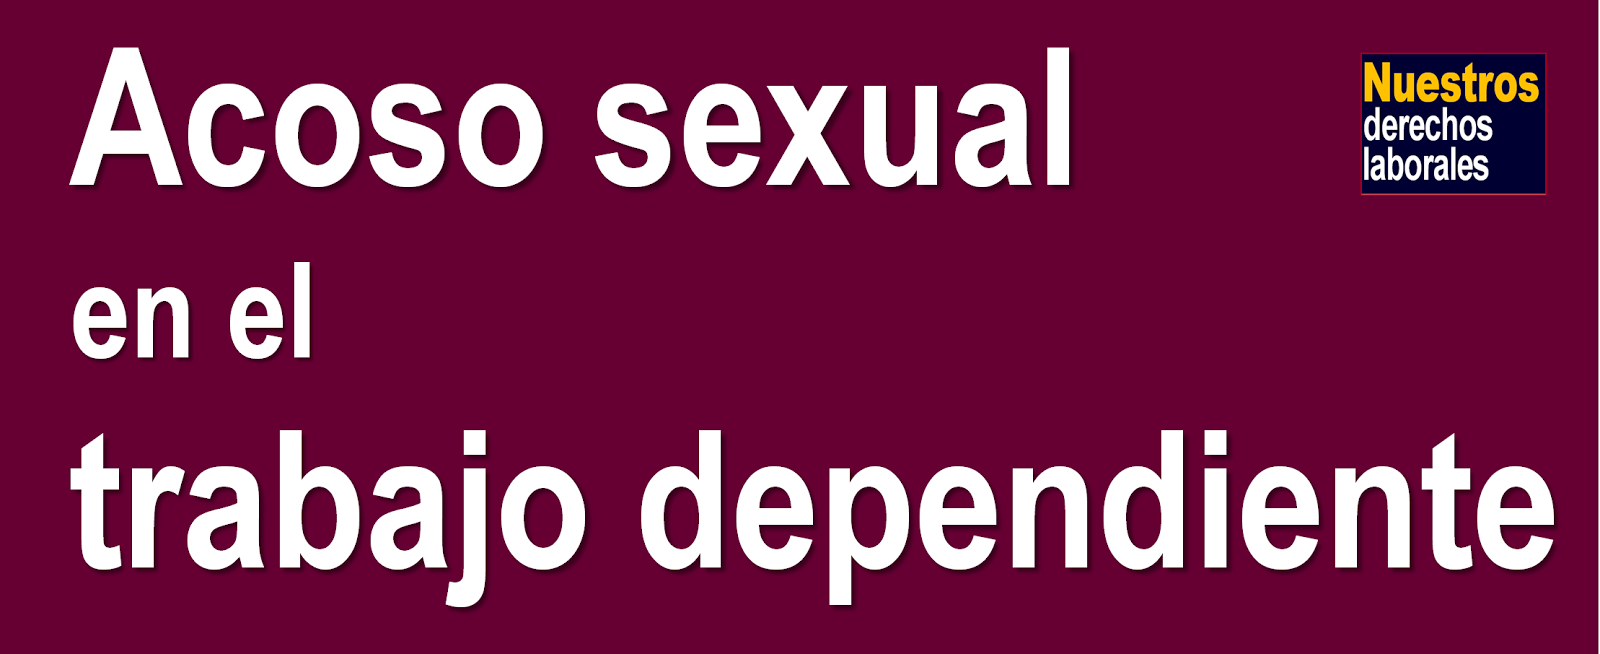 ACOSO SEXUAL EN EL TRABAJO DEPENDIENTE.